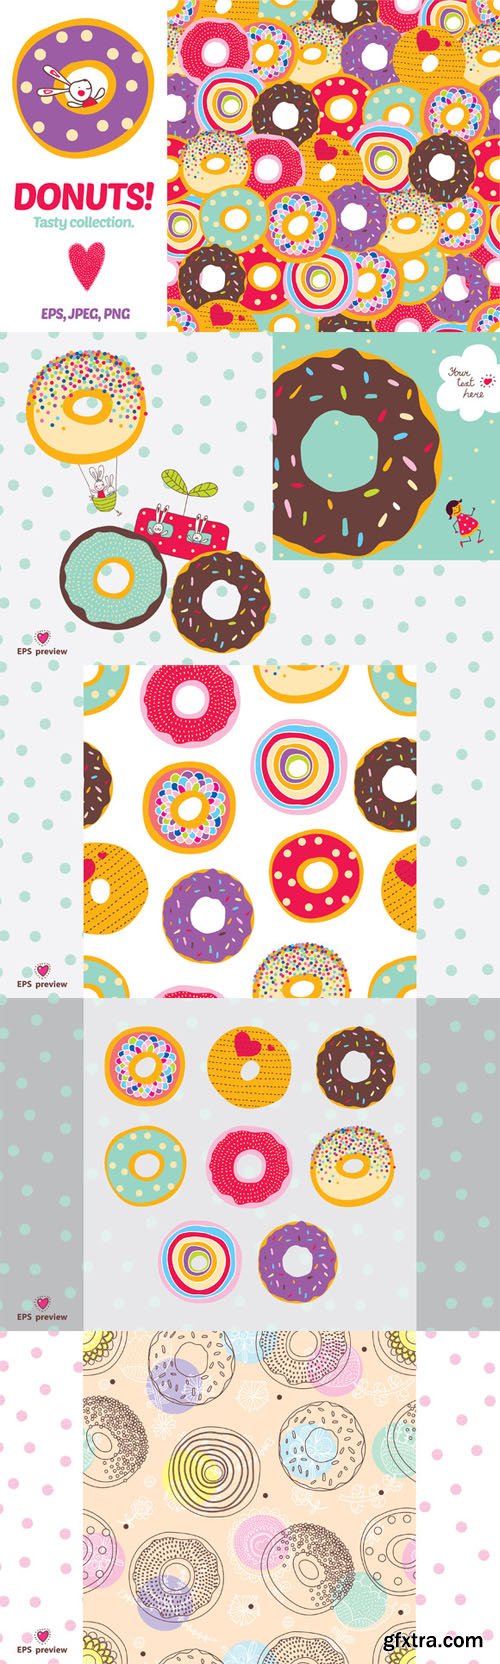 Love donuts - CM 238232